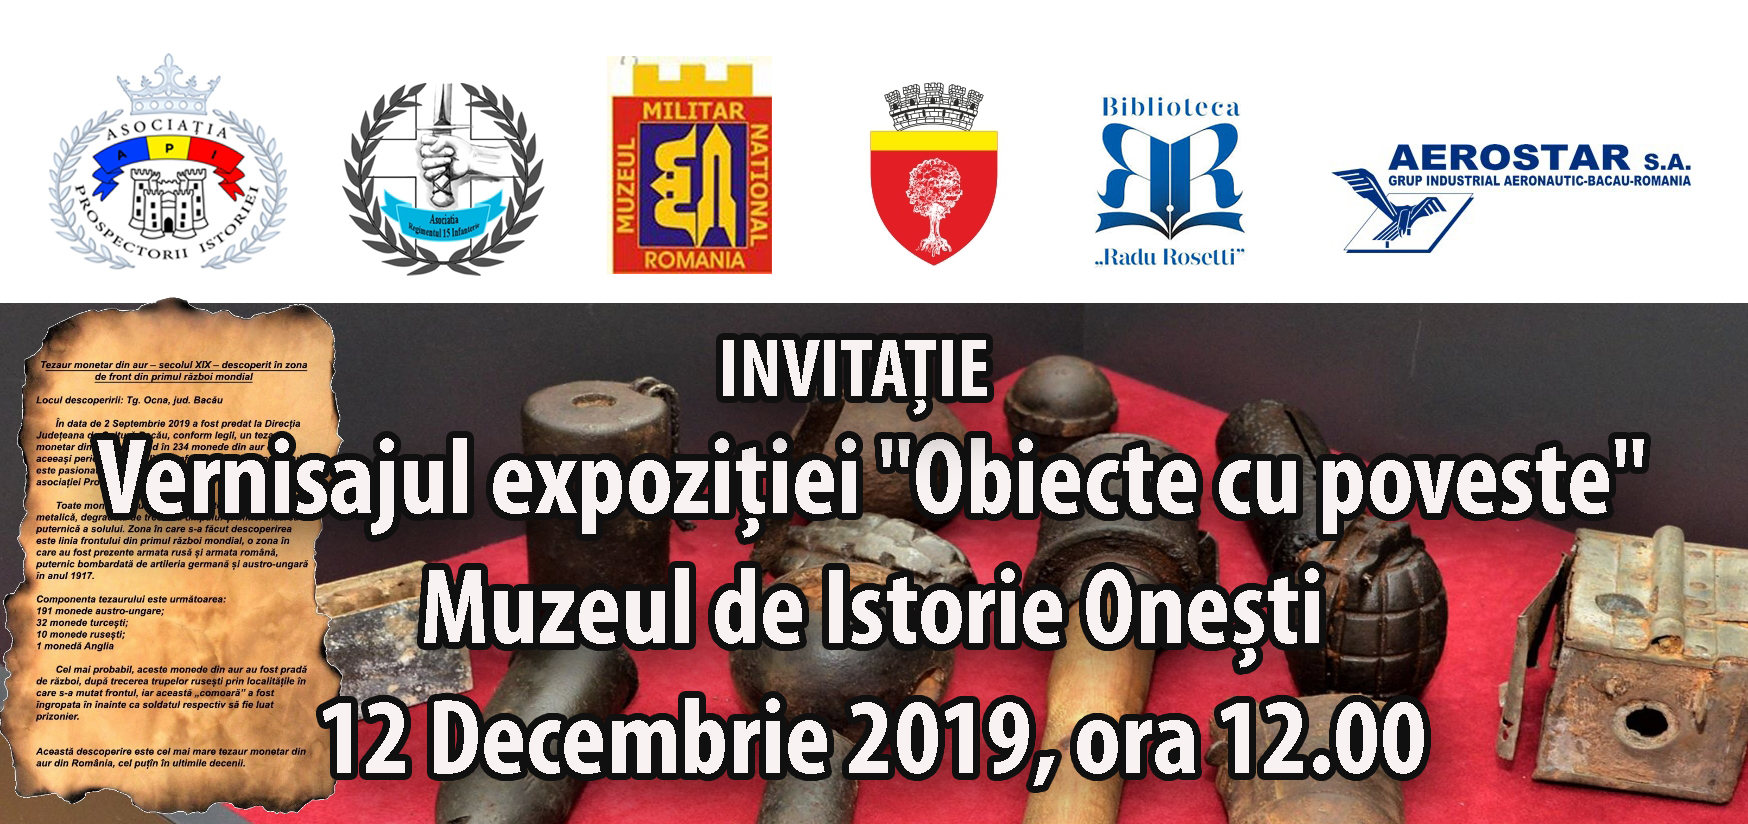 INVITAȚIE Vernisajul expoziției "Obiecte cu poveste" Muzeul de Istorie Onești - 12 Decembrie 2019